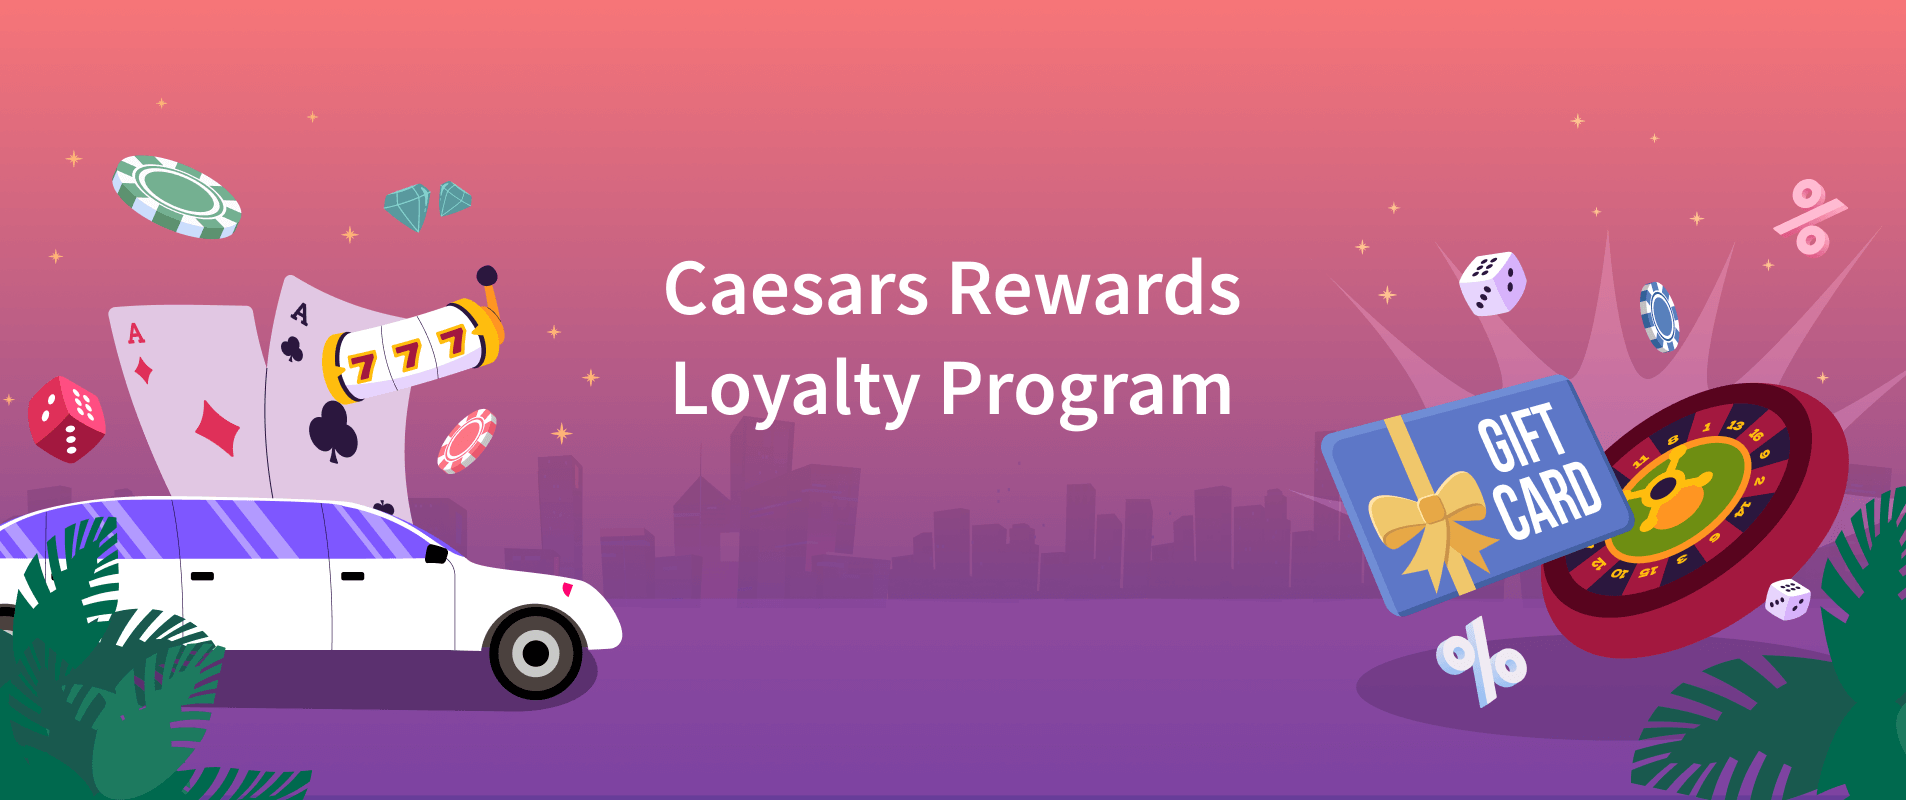 Travel Affiliate Program - Caesars Rewards